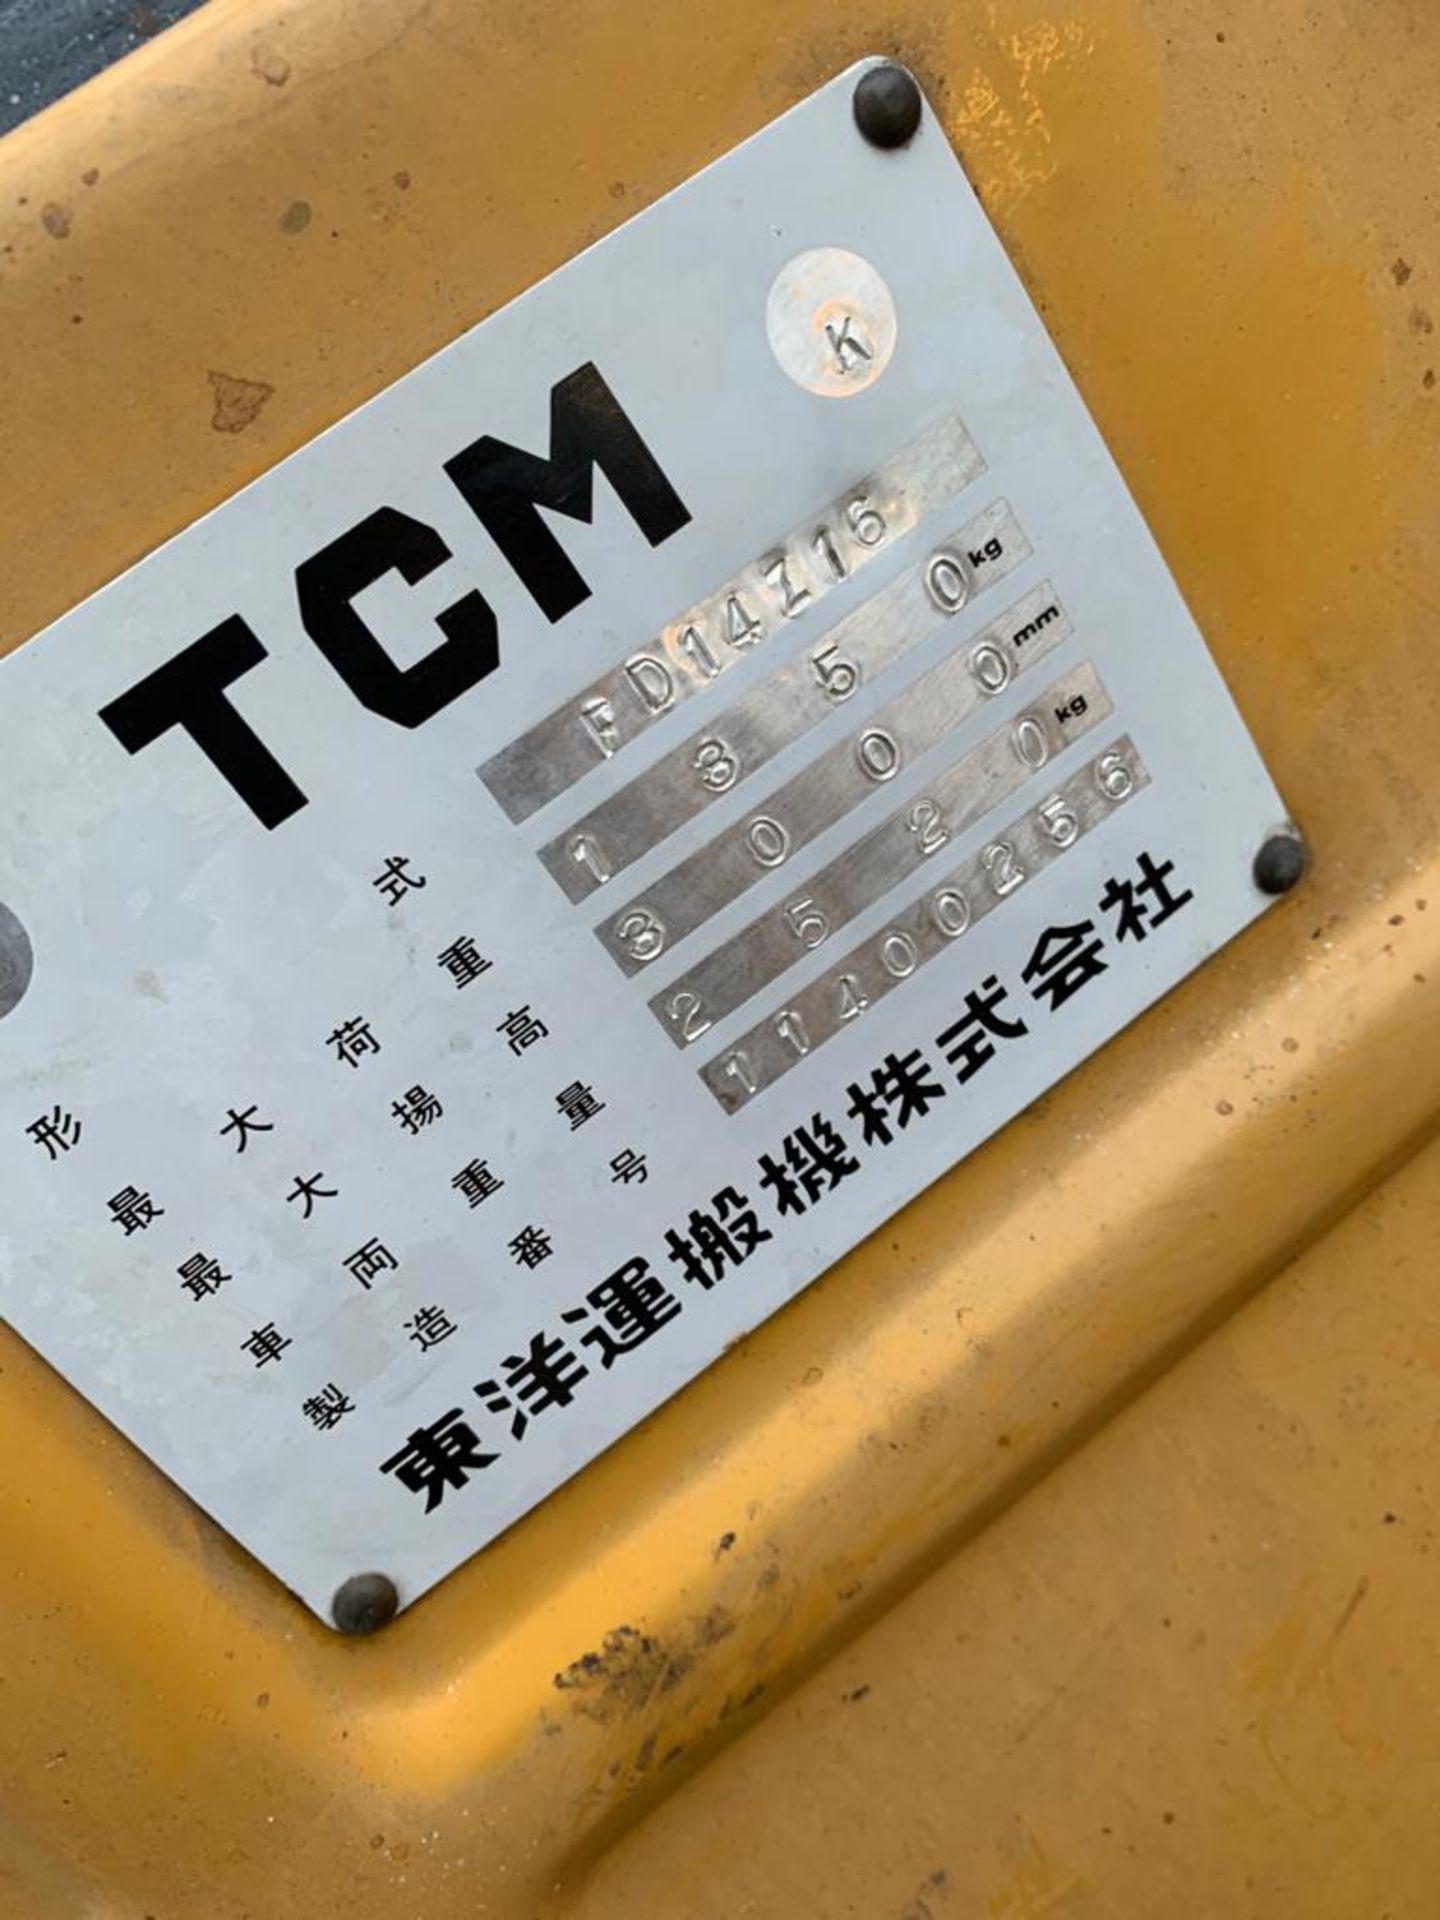 TCM 2500kg FORKTRUCK, DIESEL, WORKS EVERYDAY *NO VAT* - Image 7 of 7